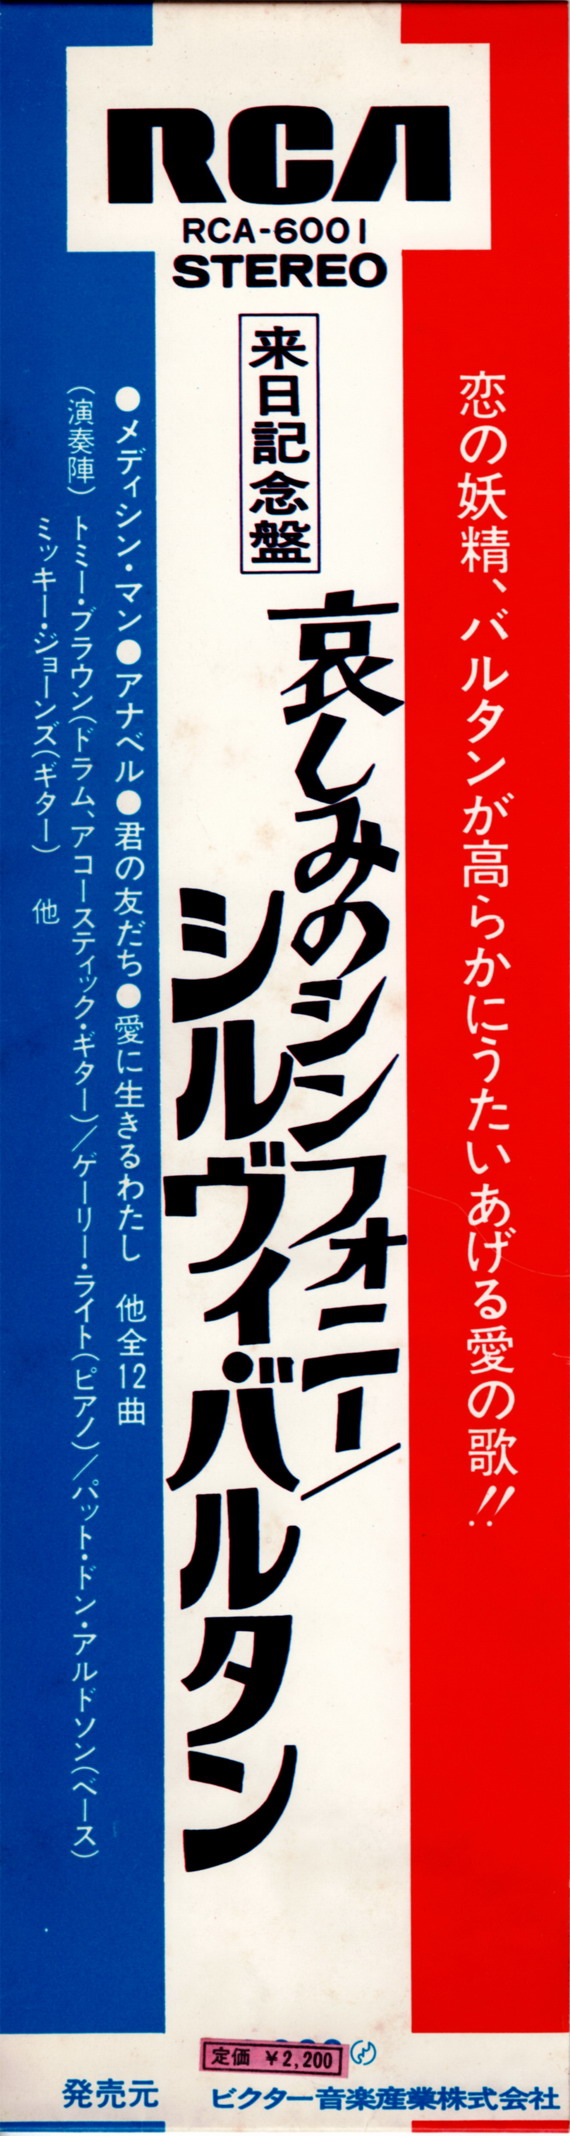 Discographie Japonaise - 3ème partie -  (33 T ORIGINAUX)  - Page 34 Jpn_2936